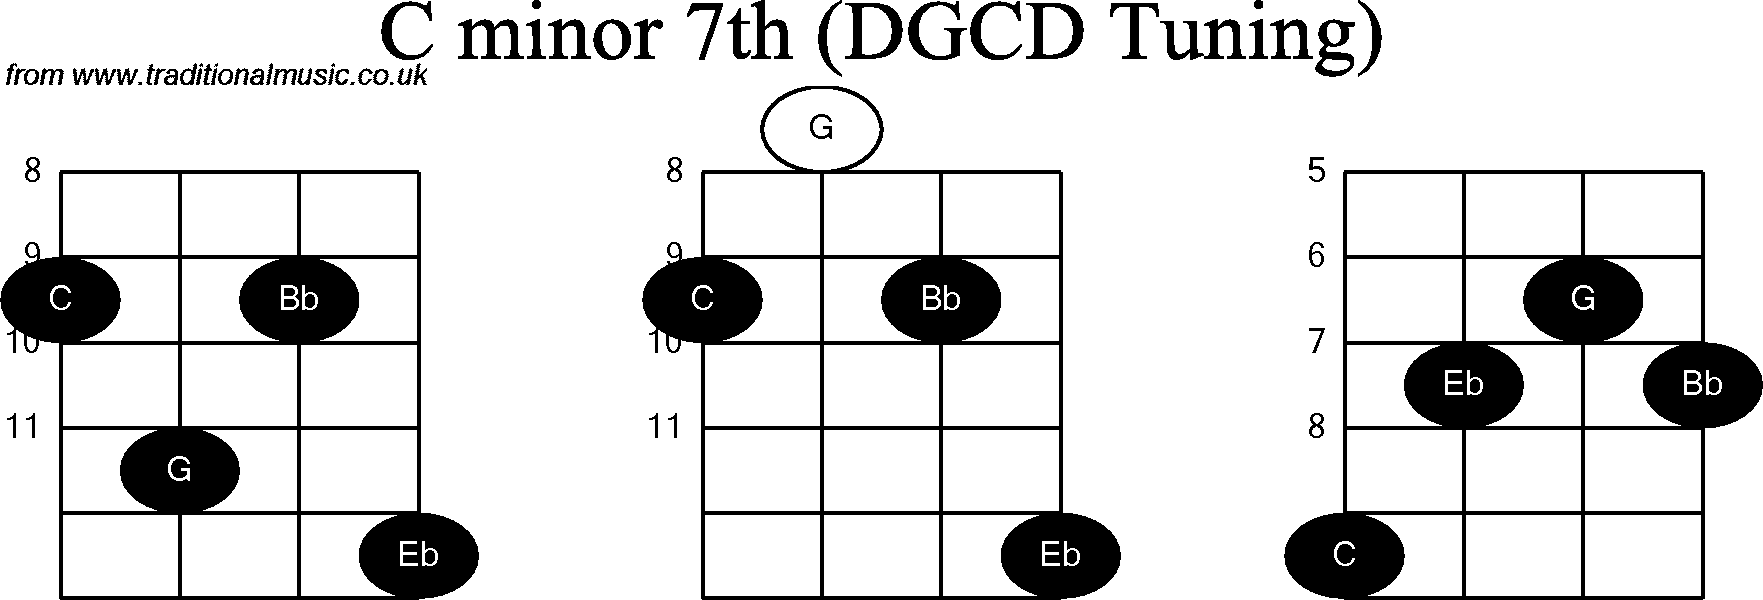 Chord diagrams for Banjo(G Modal) C Minor7th